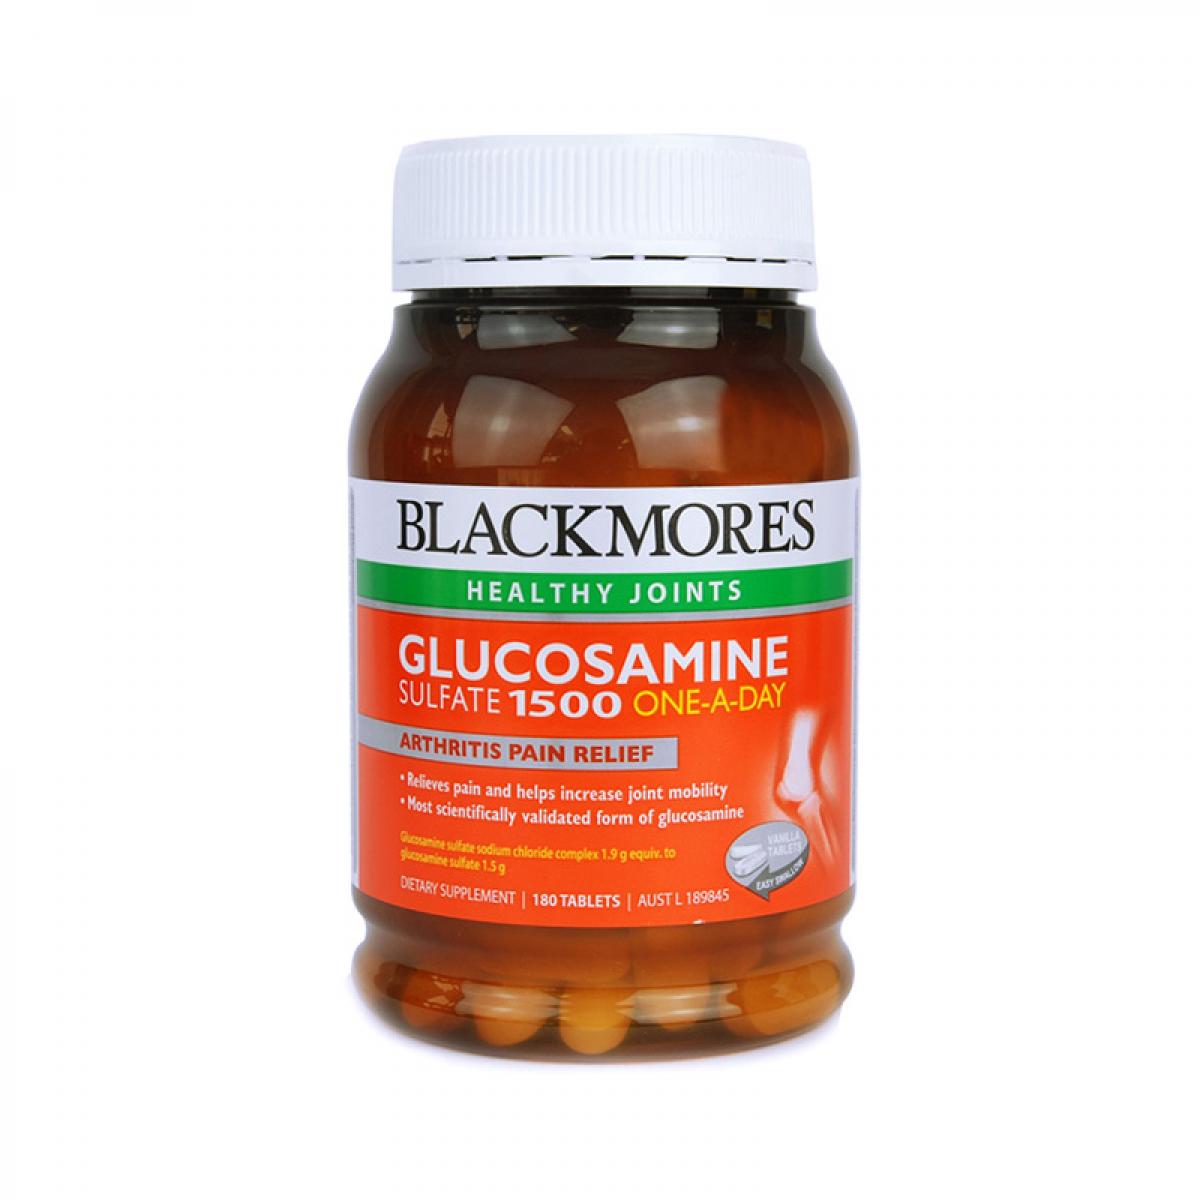 【全球购】2瓶装 BLACKMORES Glucosamine 维骨力关节灵 180粒